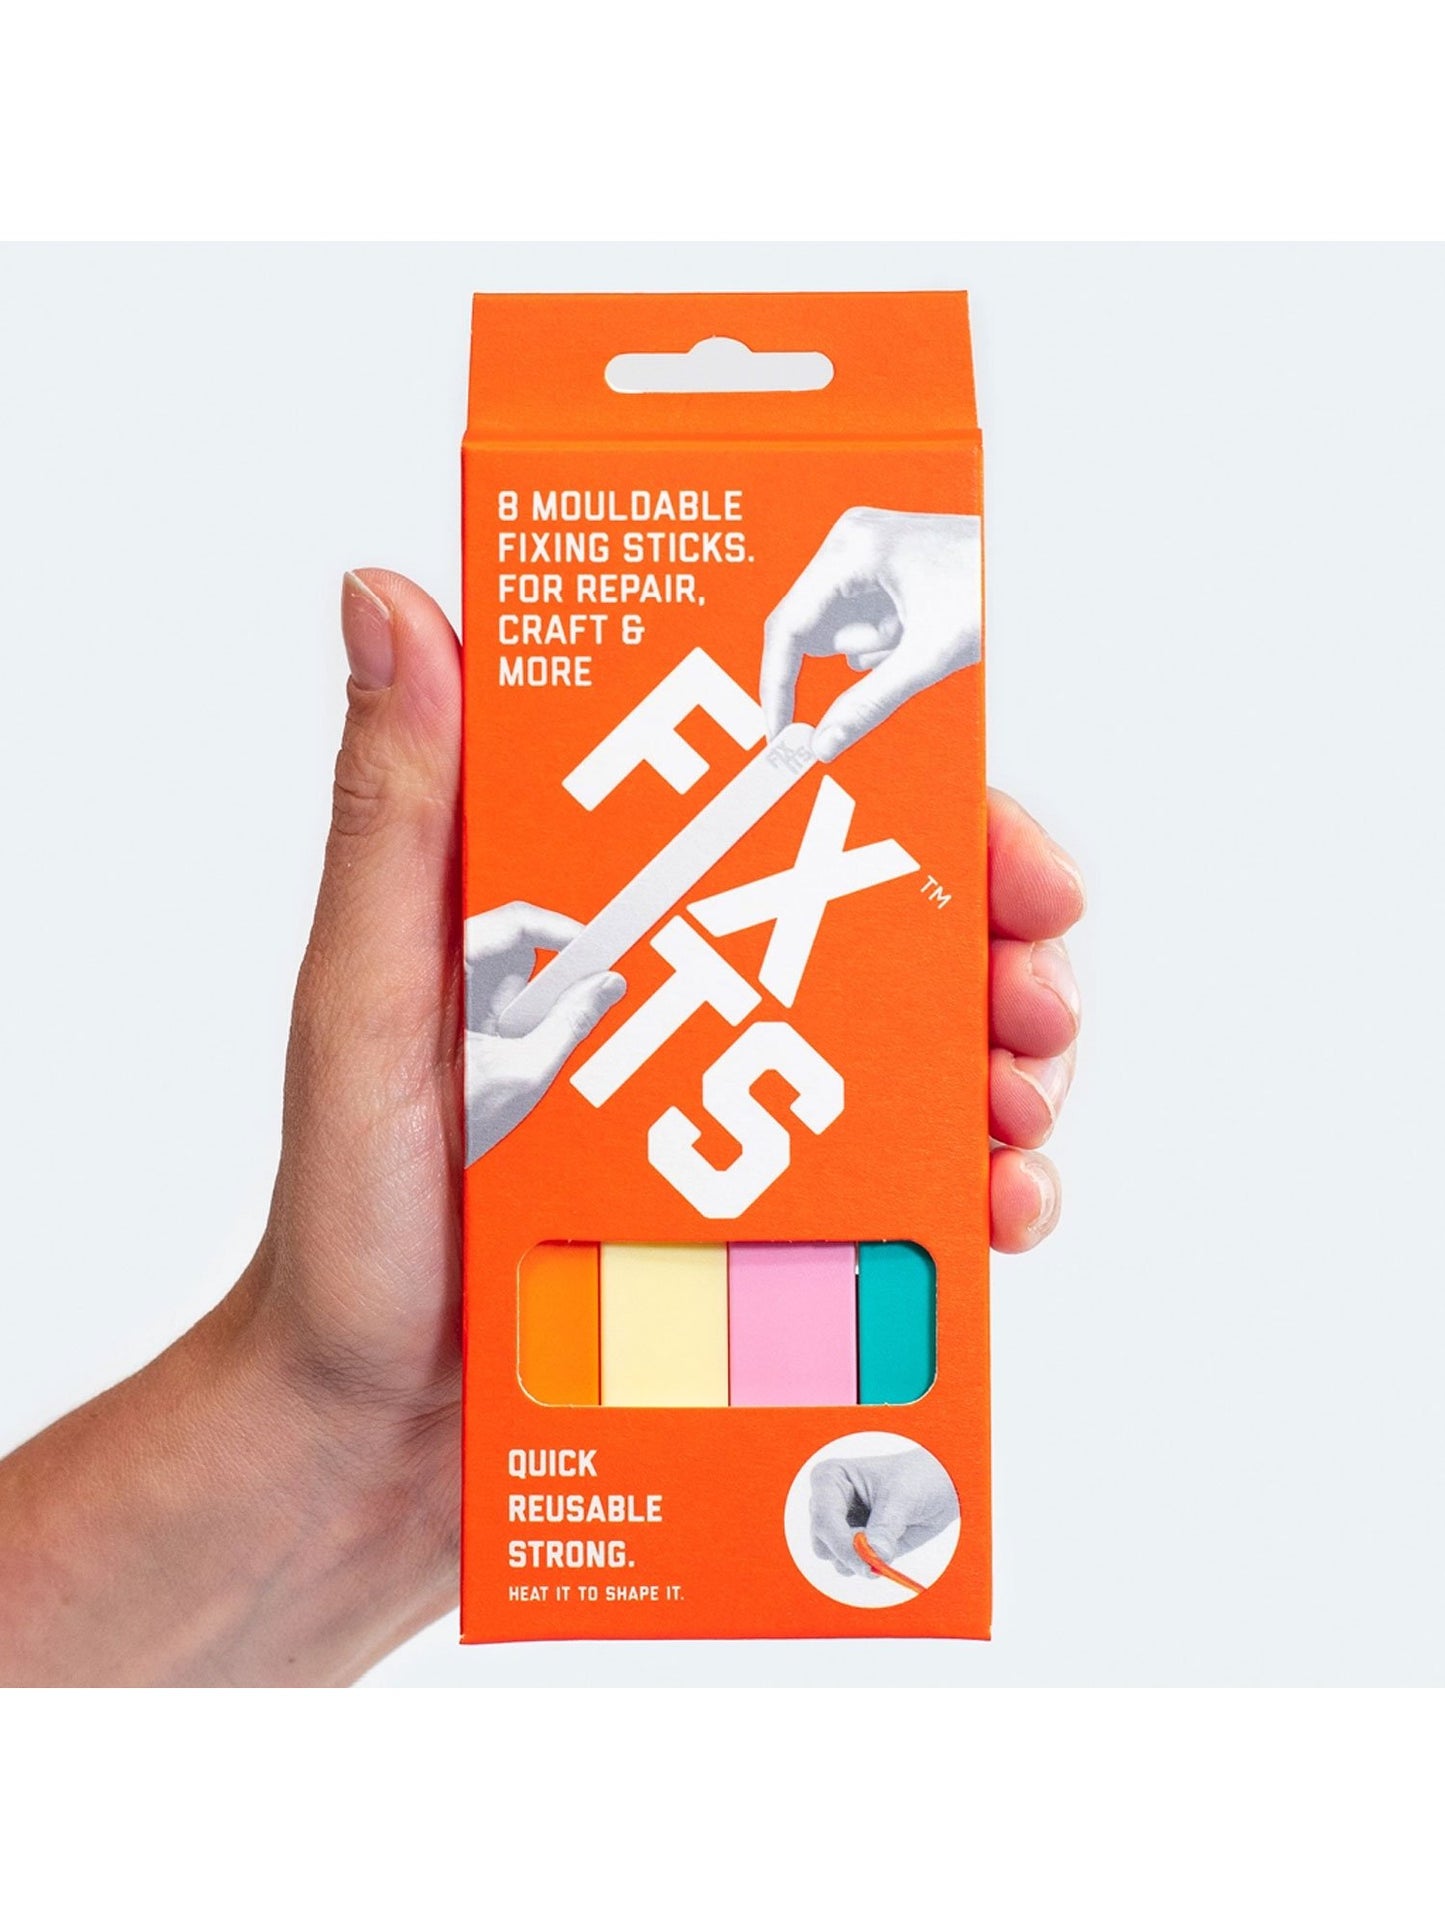 Fixits 8 Pack Für Heimwerker Und Reparatur